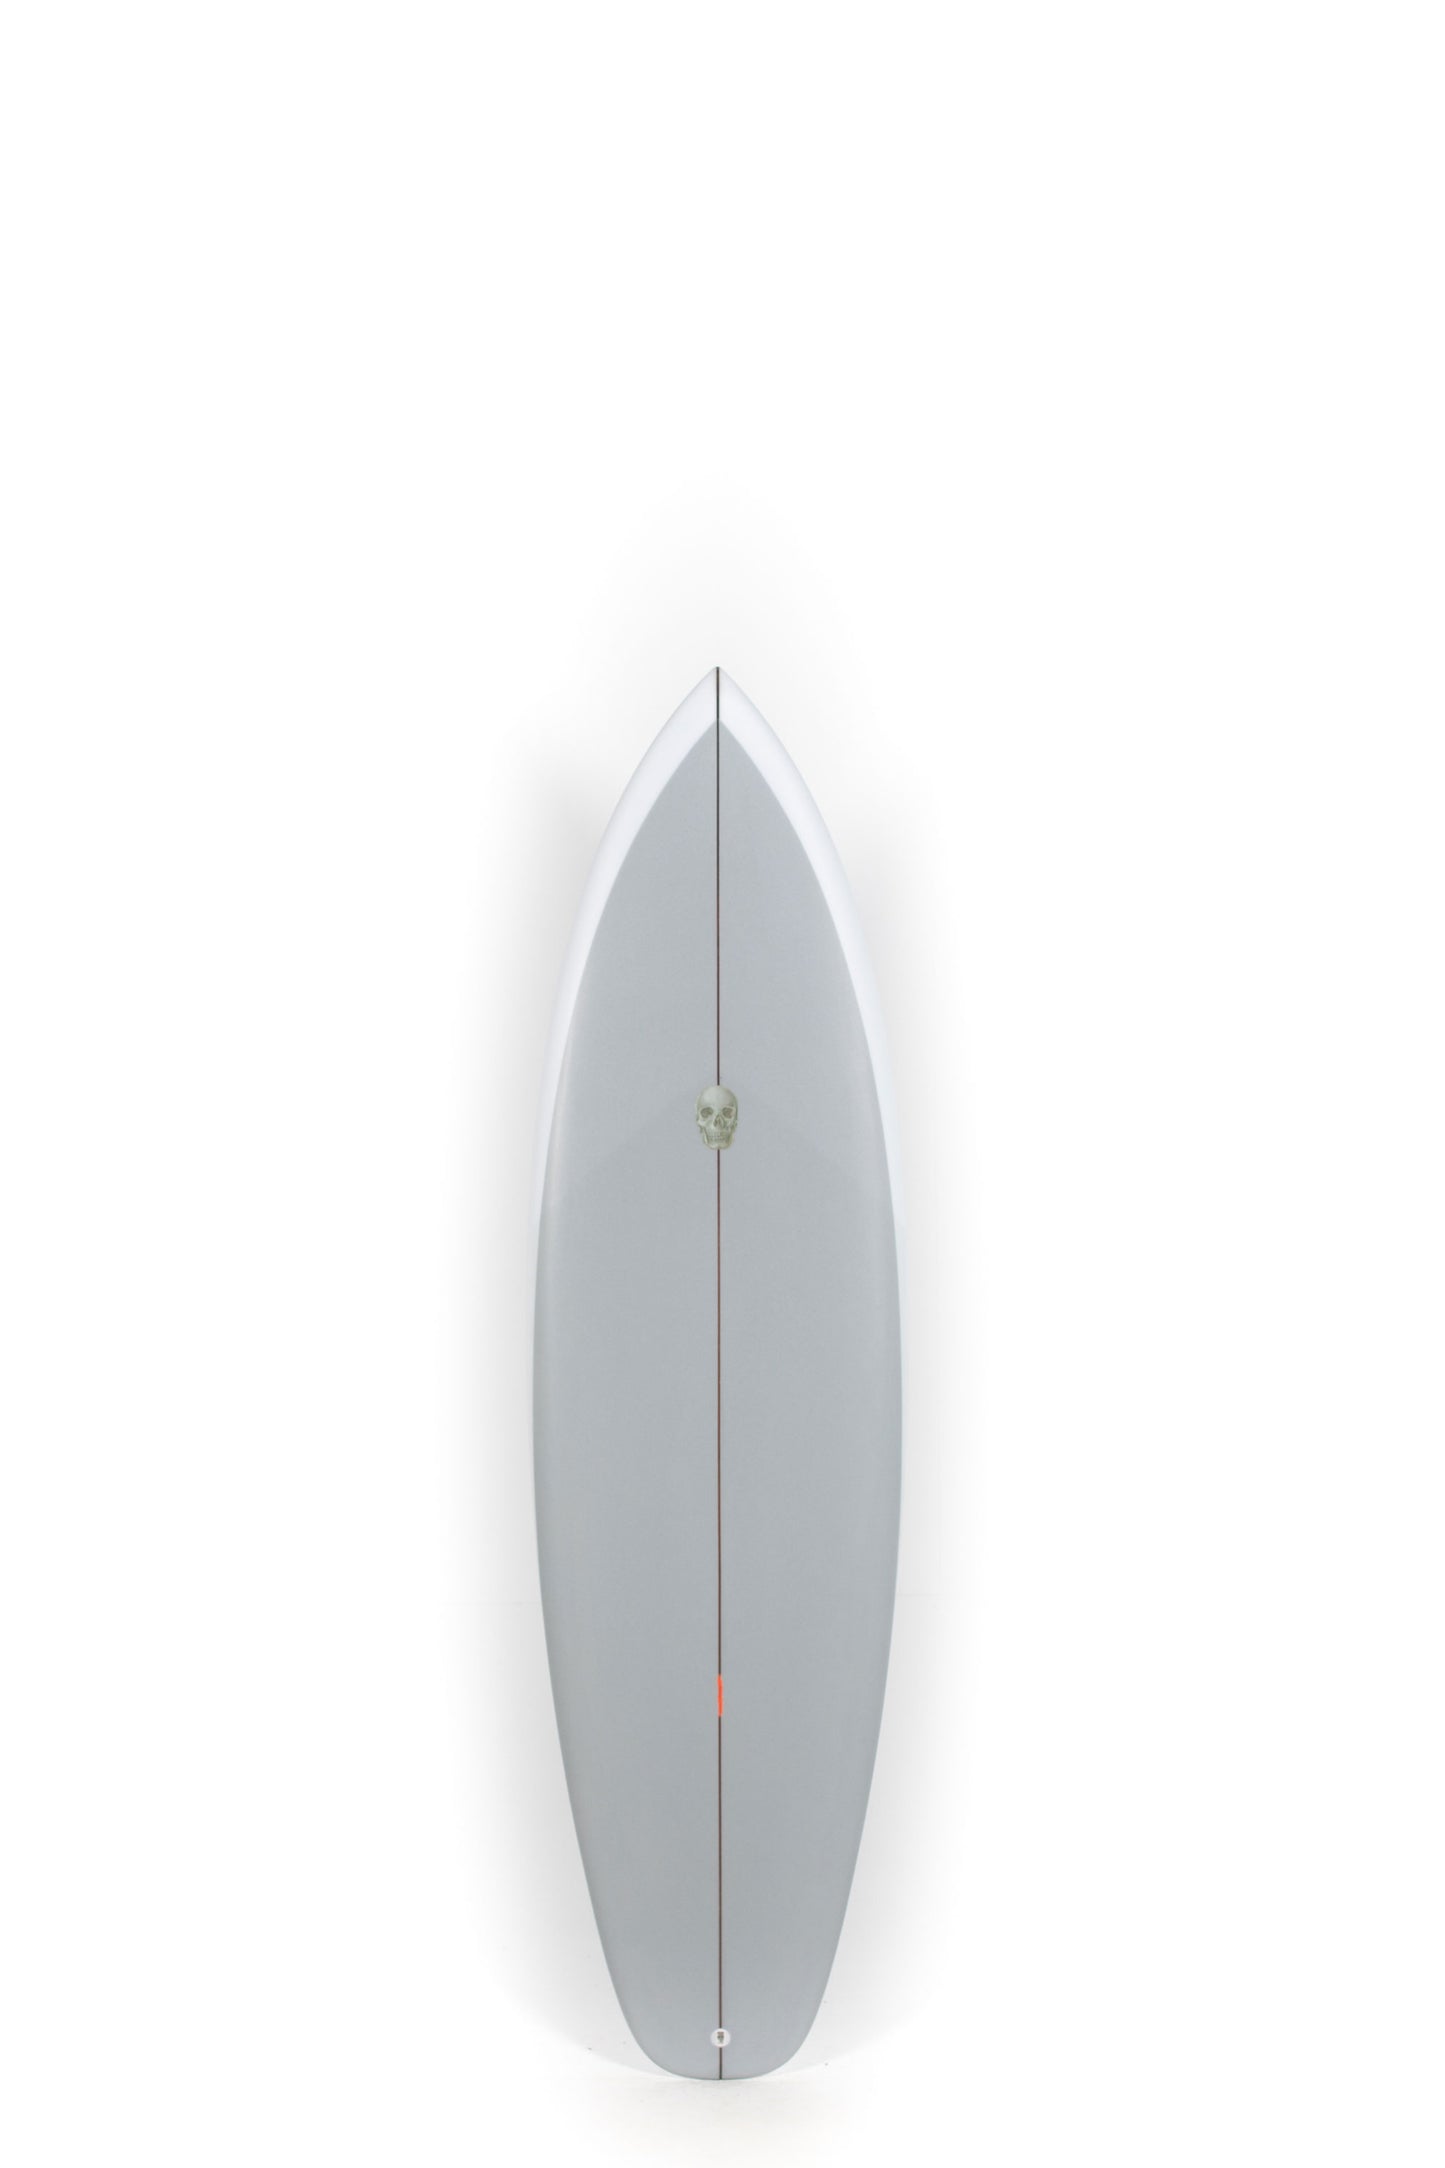 Pukas Surf Shop - Christenson Surfboard  - SURFER ROSA - 6'2” x 20 1/4 x 2 9/16 - CX05002